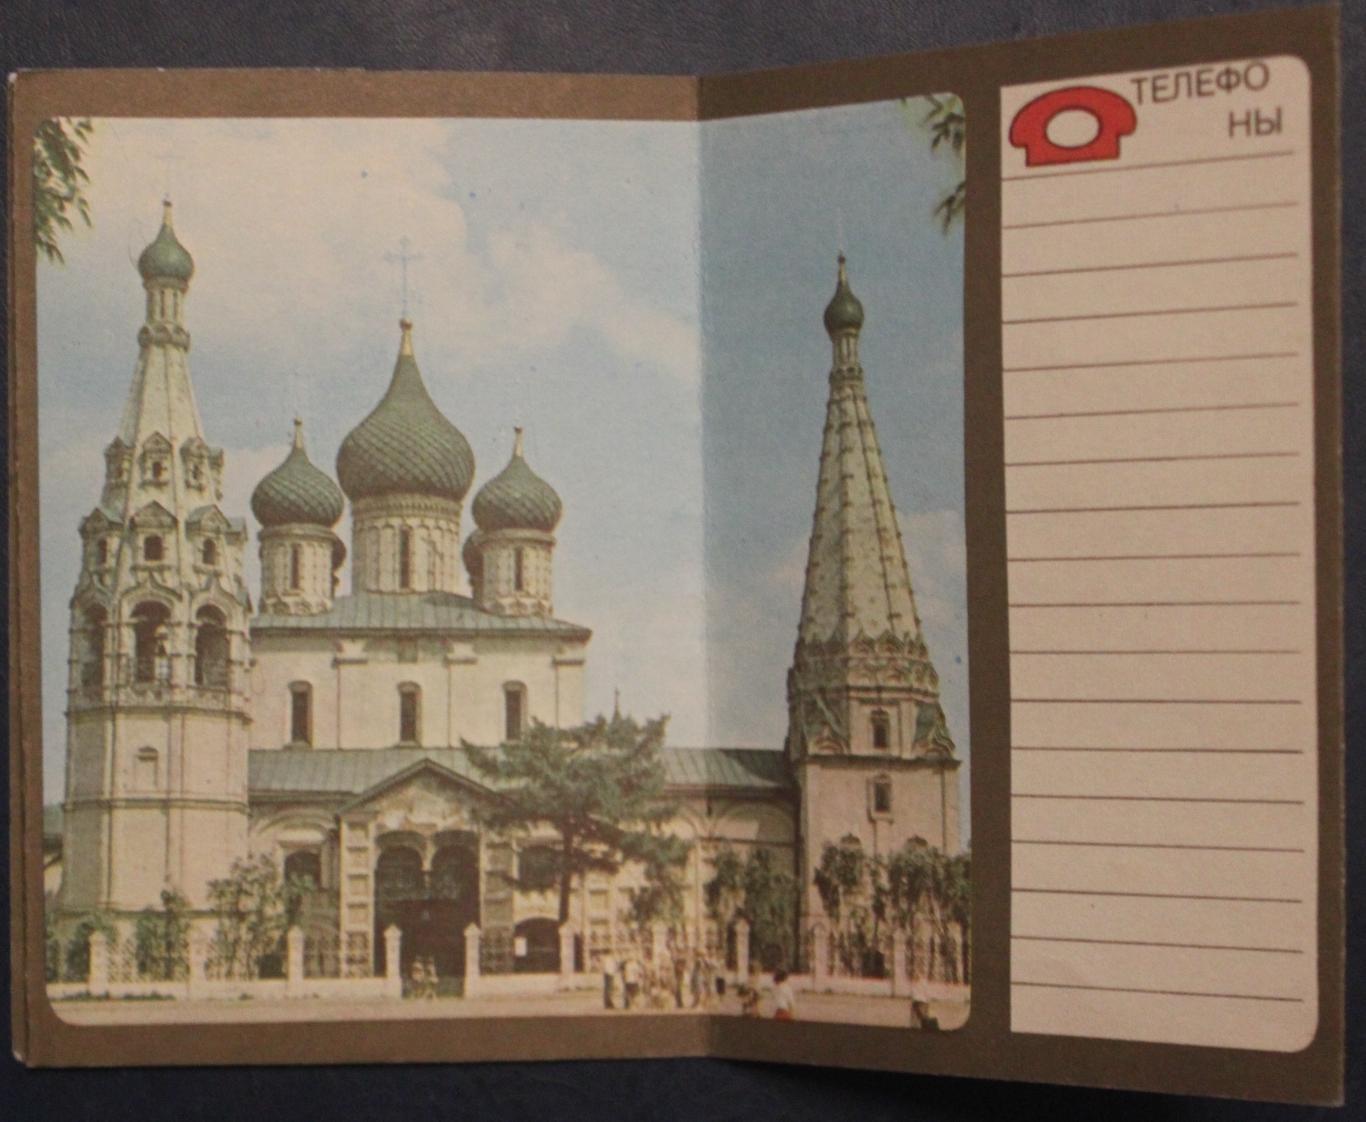 Сувенирный календарь-памятка Ярославль 1988 3